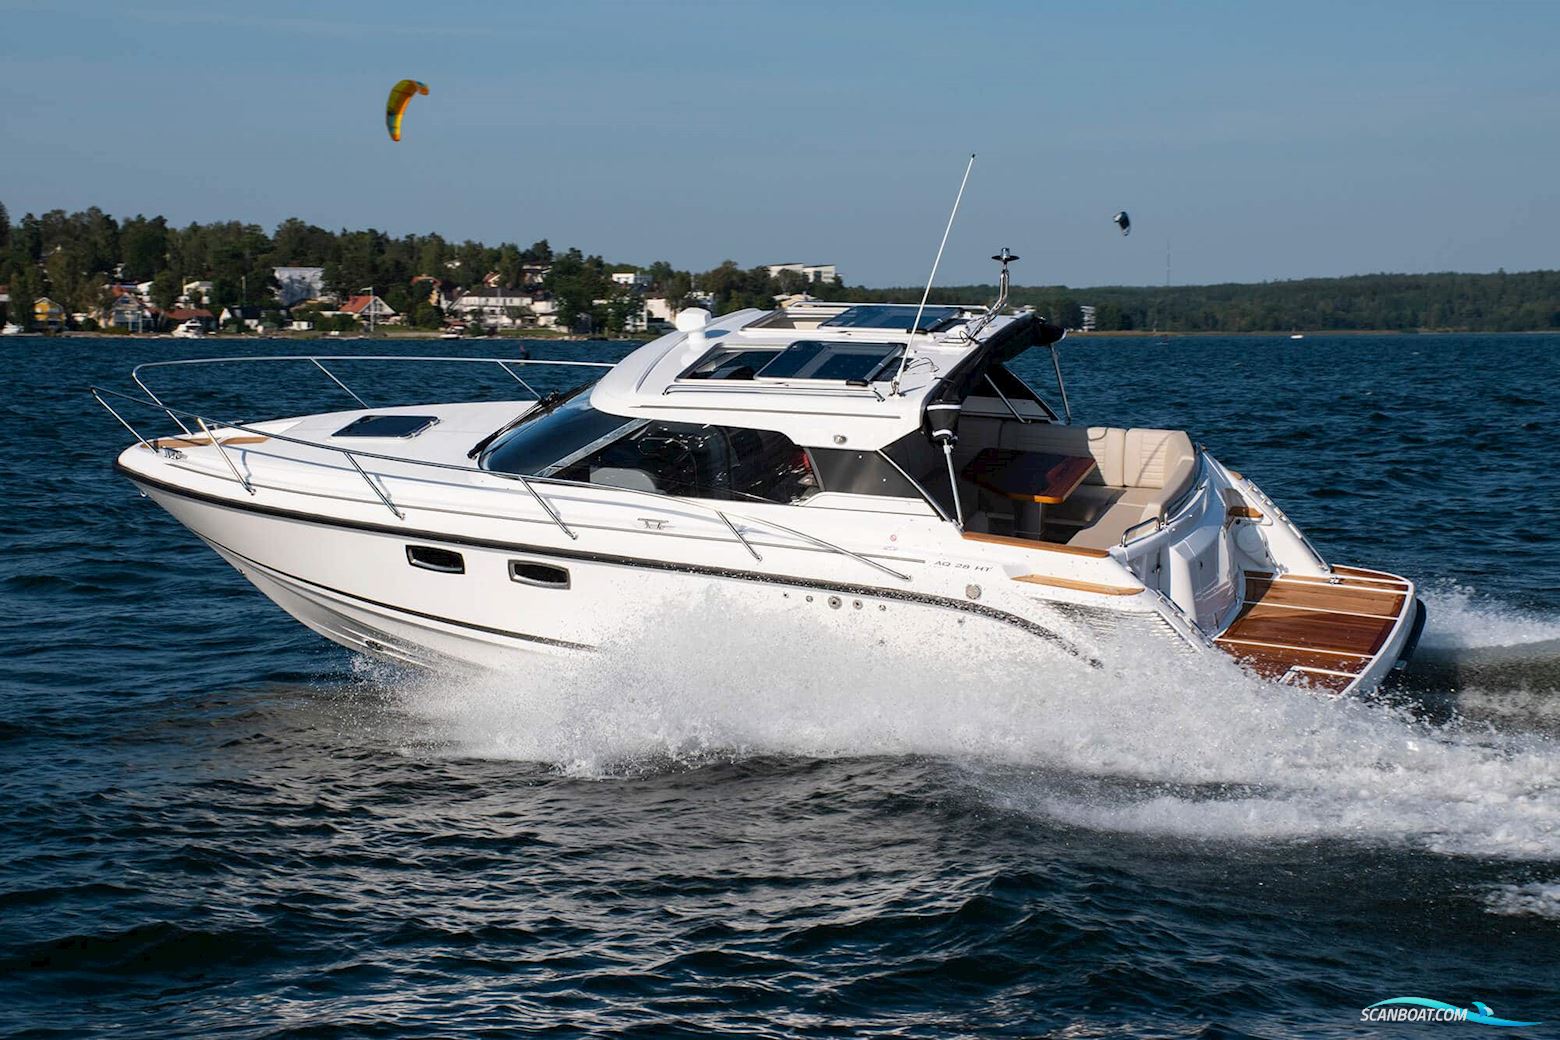 Aquador 28 HT Motor boat 2022, with Mercury Diesel V6-270 hk engine, Sweden